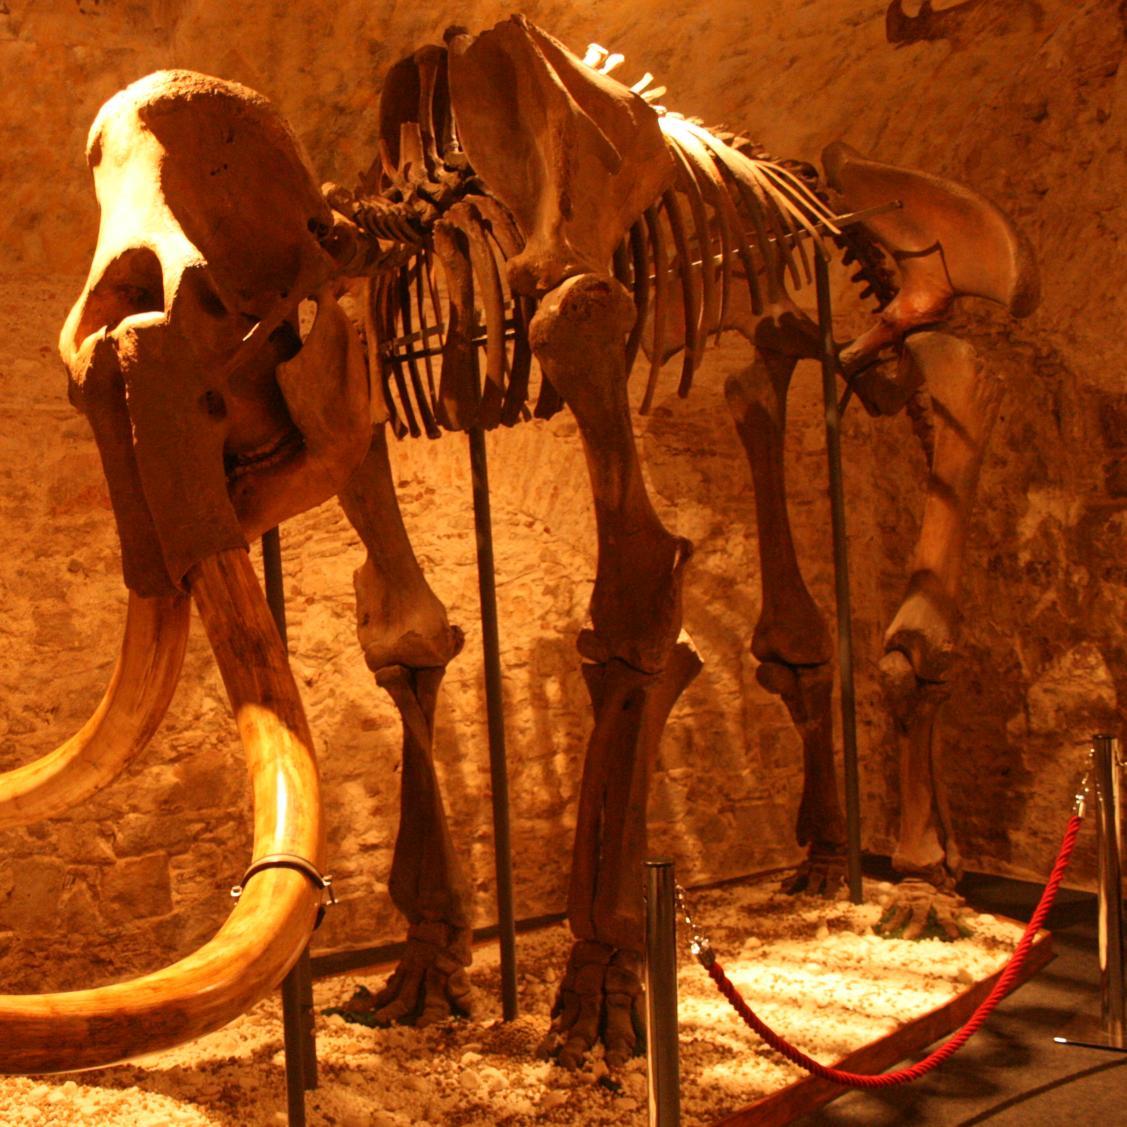 Una experiencia de enormes dimensiones. Este museo de paleontología contiene una exposición única dedicada a los animales de la Edad de Hielo. Metro L4 Jaume I.